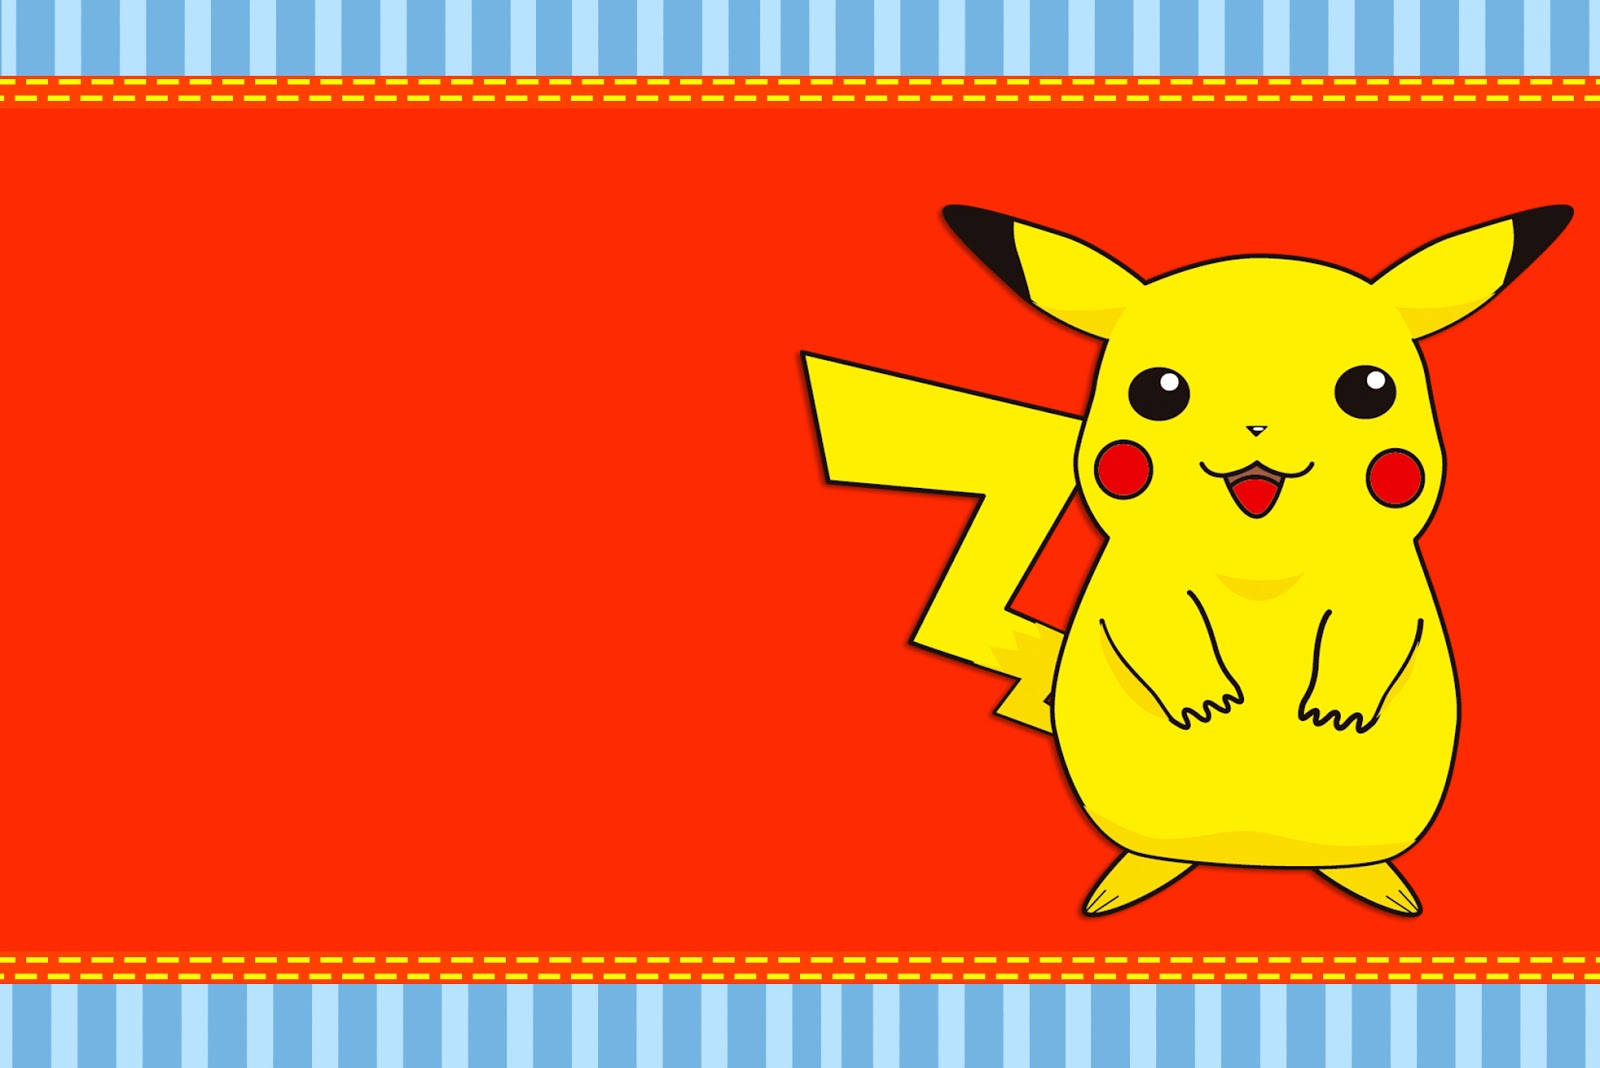 Fazendo a Minha Festa!: Pokémon - Kit Completo com molduras para convites,  rótulos para guloseimas, lembrancinhas e imagens!